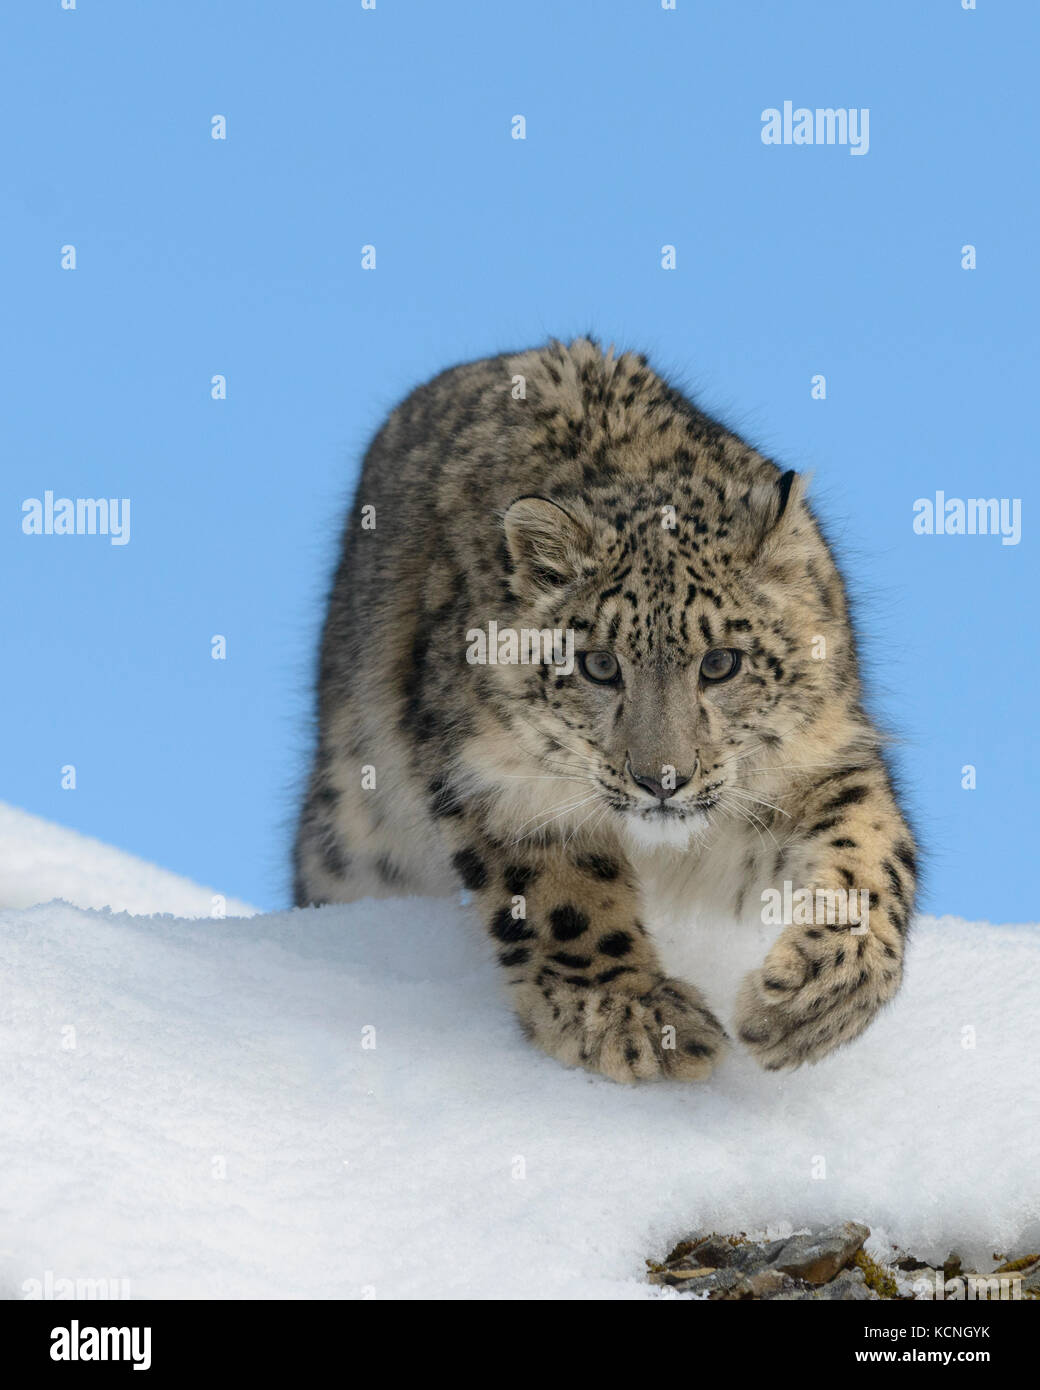 Léopard des neiges, Panthera uncia, dans la neige et les roches. Les espèces en voie de disparition. Des animaux en captivité. Banque D'Images